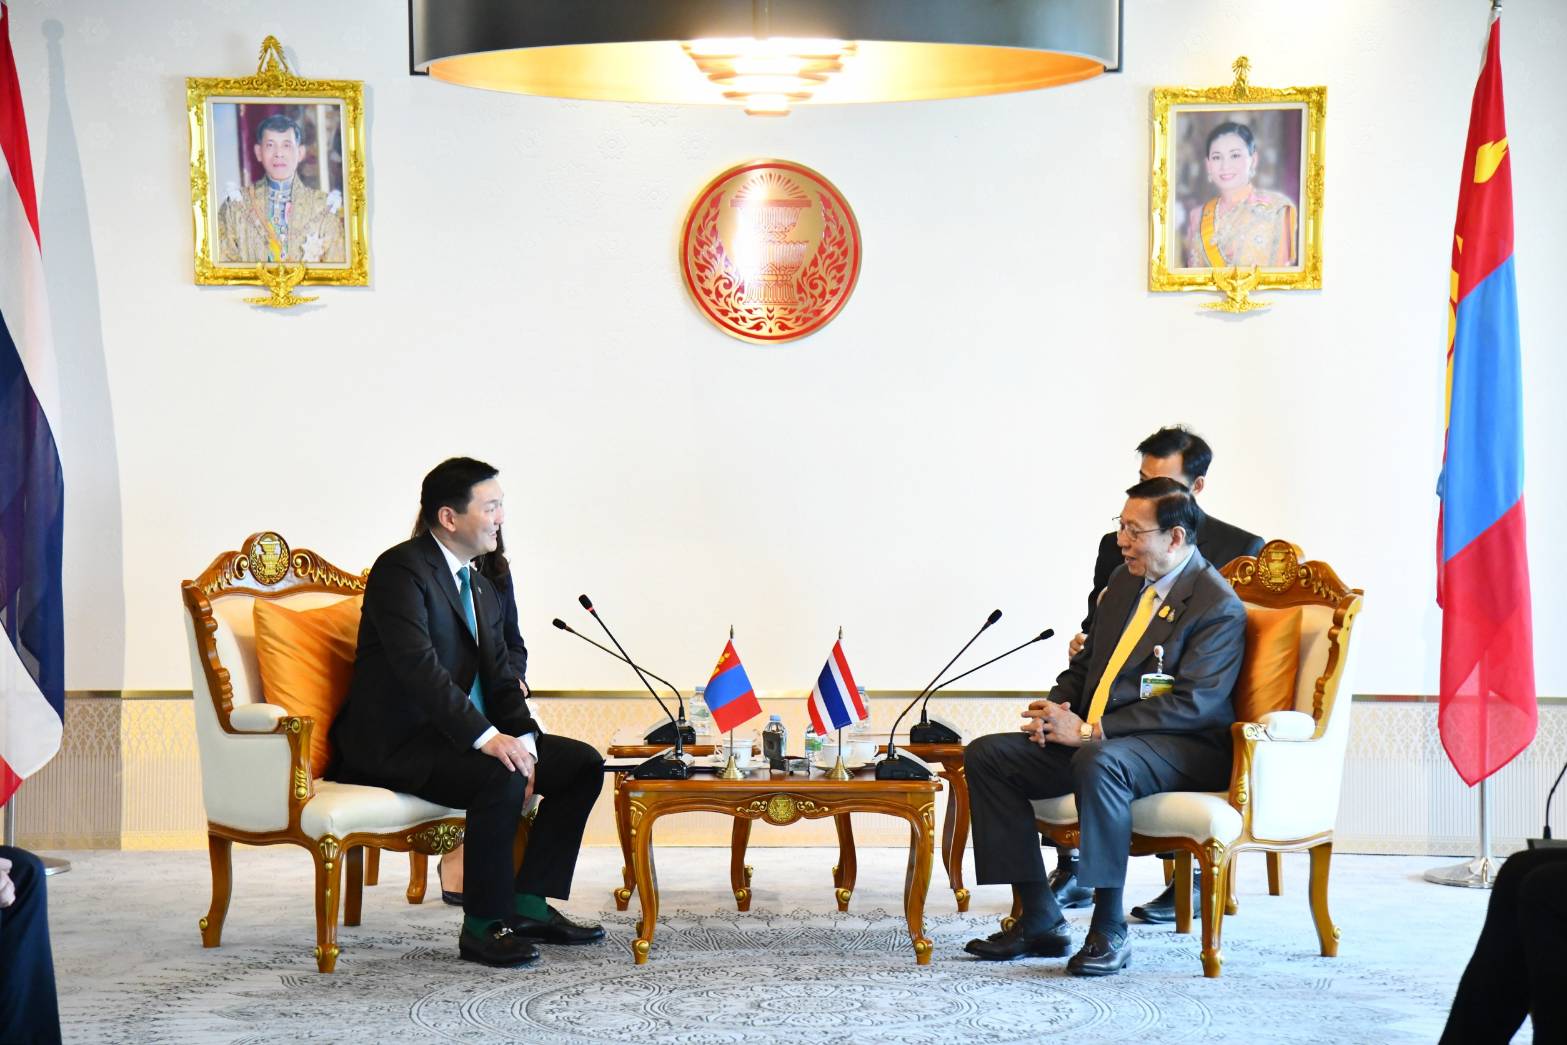 ประธานวุฒิสภาให้การรับรองรองประธานกลุ่มรัฐสภามองโกเลีย-ไทย และประธานคณะกรรมาธิการงบประมาณรัฐสภามองโกเลีย ในโอกาสเดินทางเยือนไทยอย่างเป็นทางการ ในฐานะแขกของรัฐสภาไทย